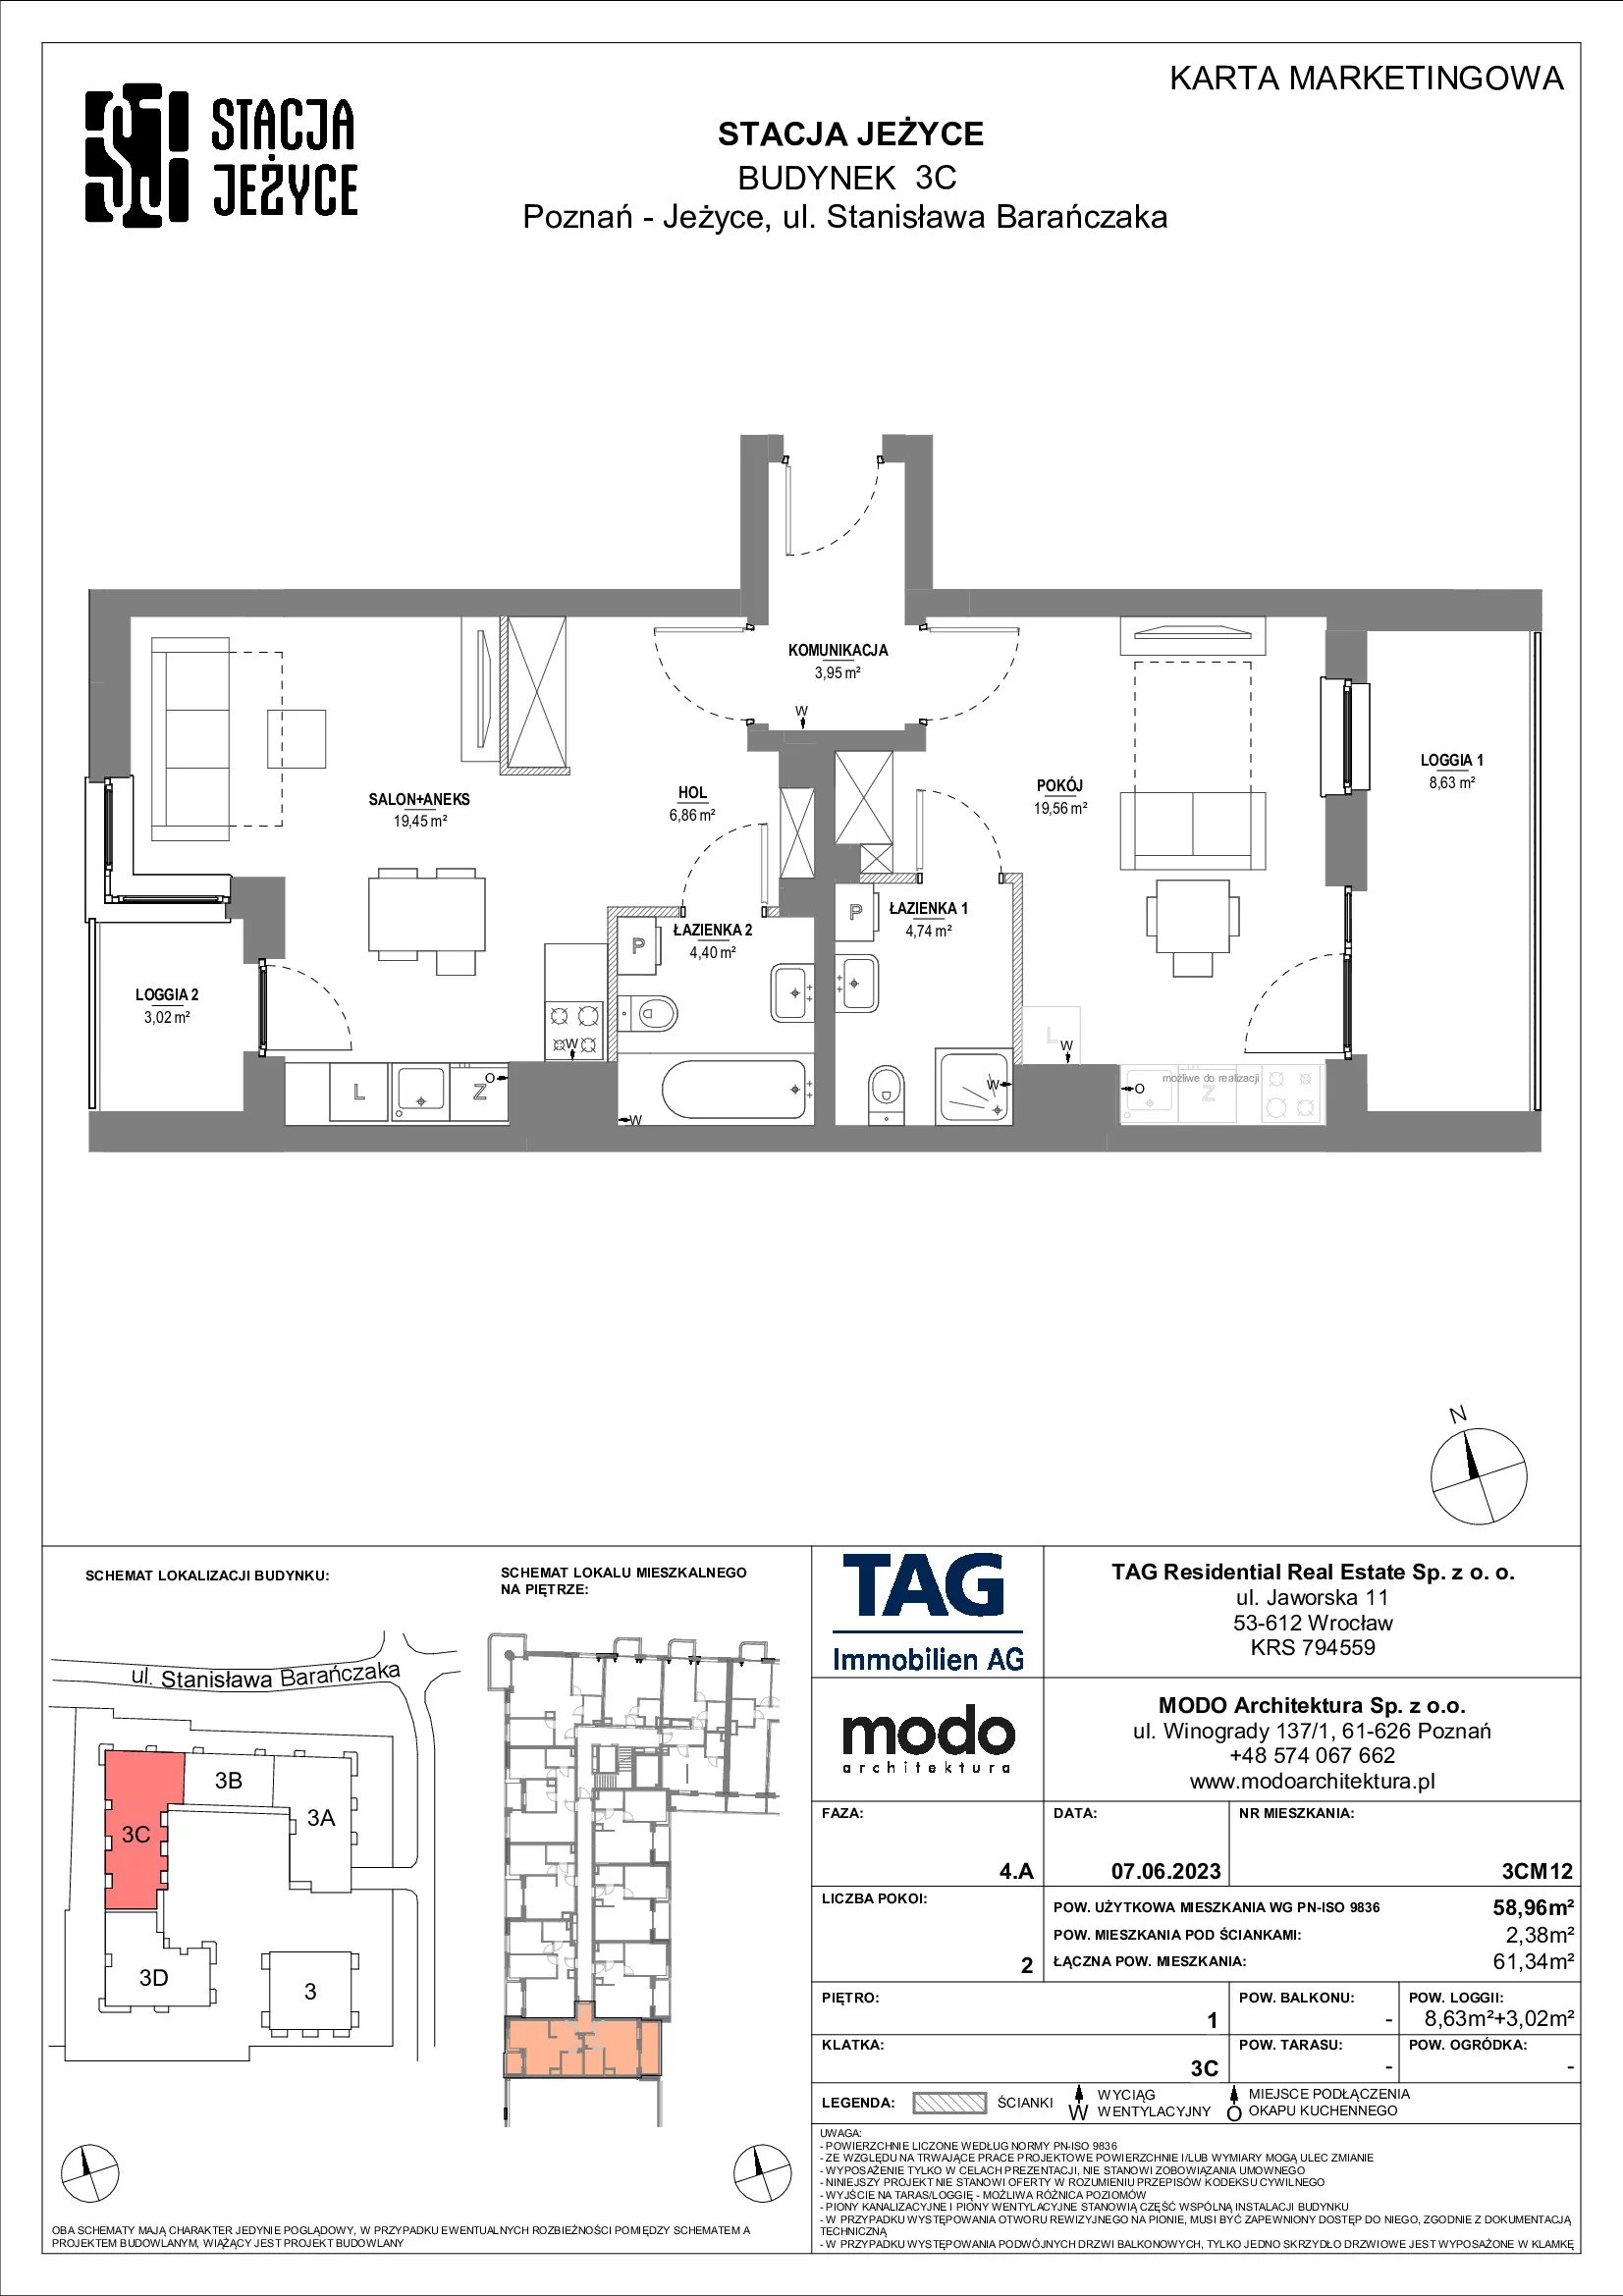 Mieszkanie 58,96 m², piętro 1, oferta nr 3CM12, Stacja Jeżyce, Poznań, Jeżyce, Jeżyce, ul. Stanisława Barańczaka 3